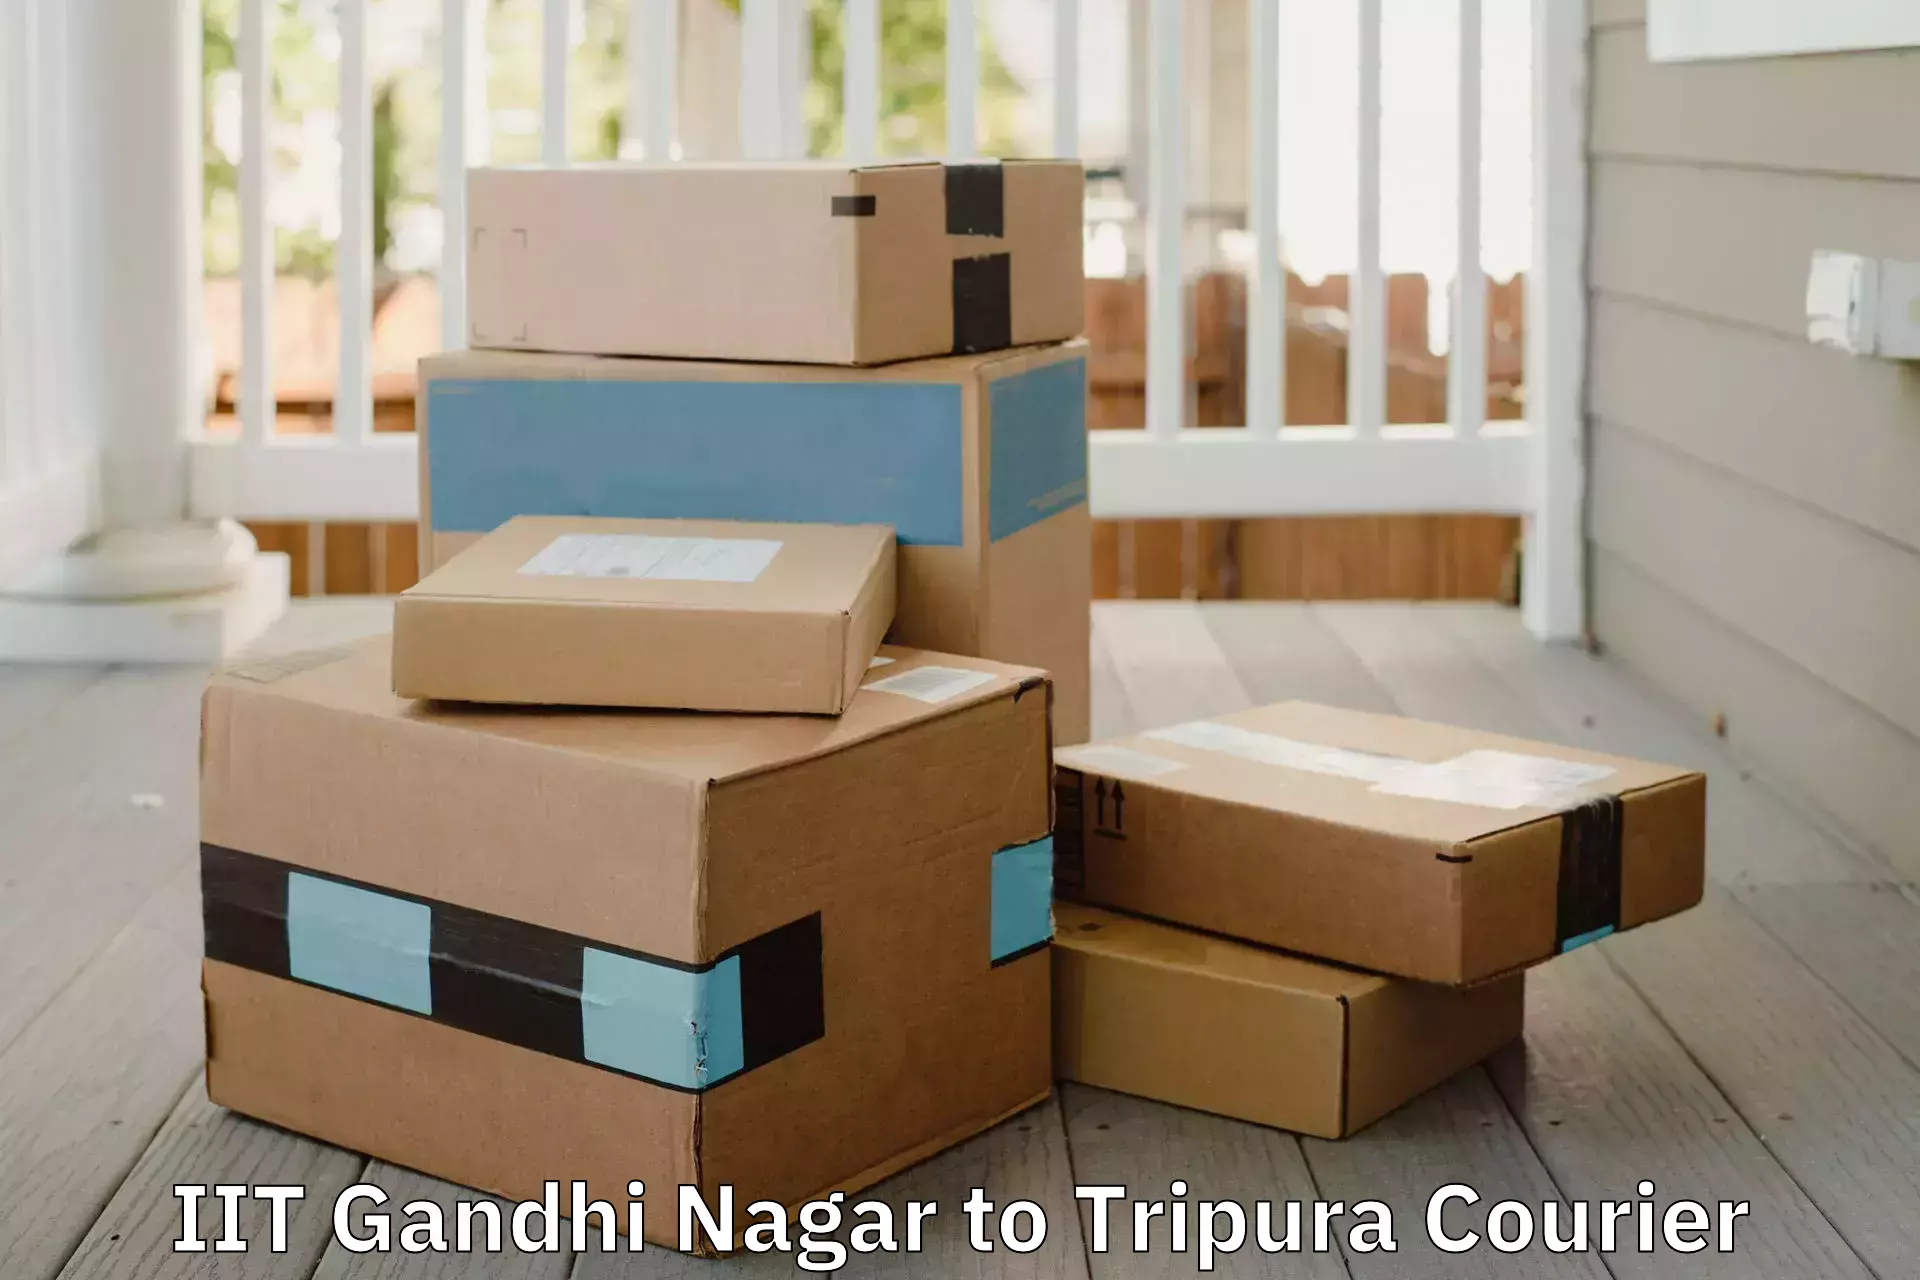 Professional packing services IIT Gandhi Nagar to Dhalai